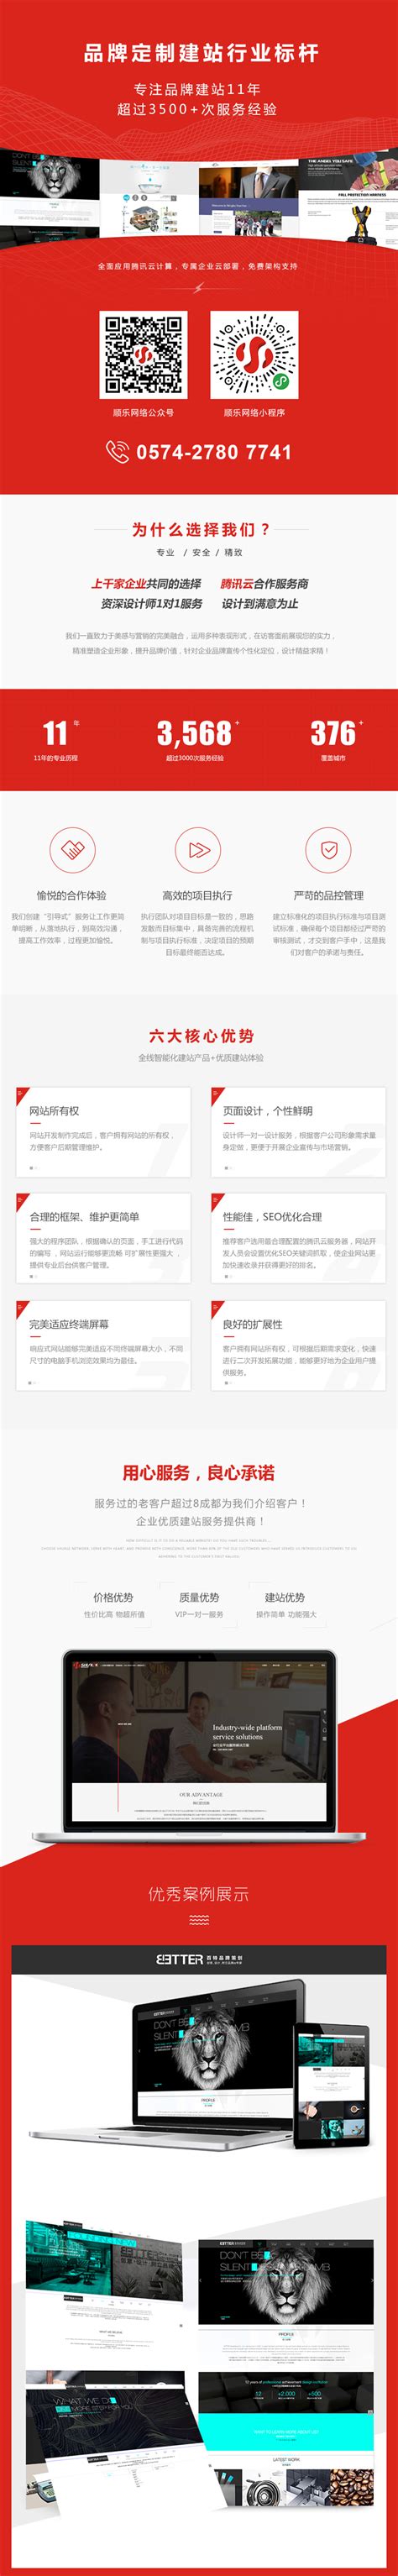 上海某科技公司网站建设_上海IT外包_网络维护_弱电工程_系统集成_上海颐泽信息技术有限公司